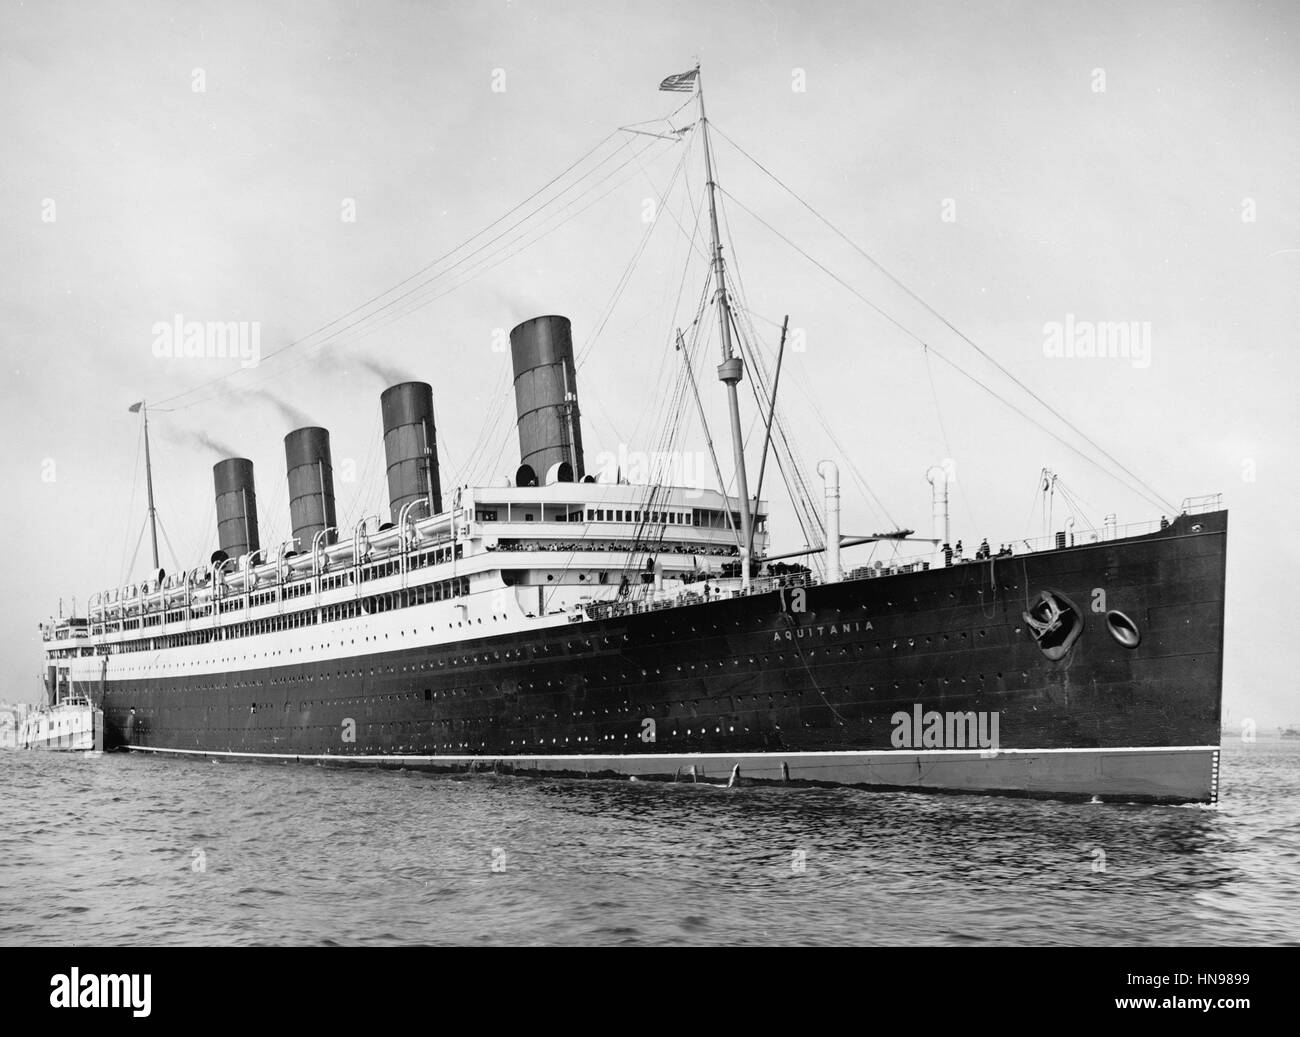 RMS AQUITANIA Cunard Line transatlantico nave passeggeri (1913-1950) mostrato nel porto di New York per il suo viaggio inaugurale nel maggio 1914 Foto Stock